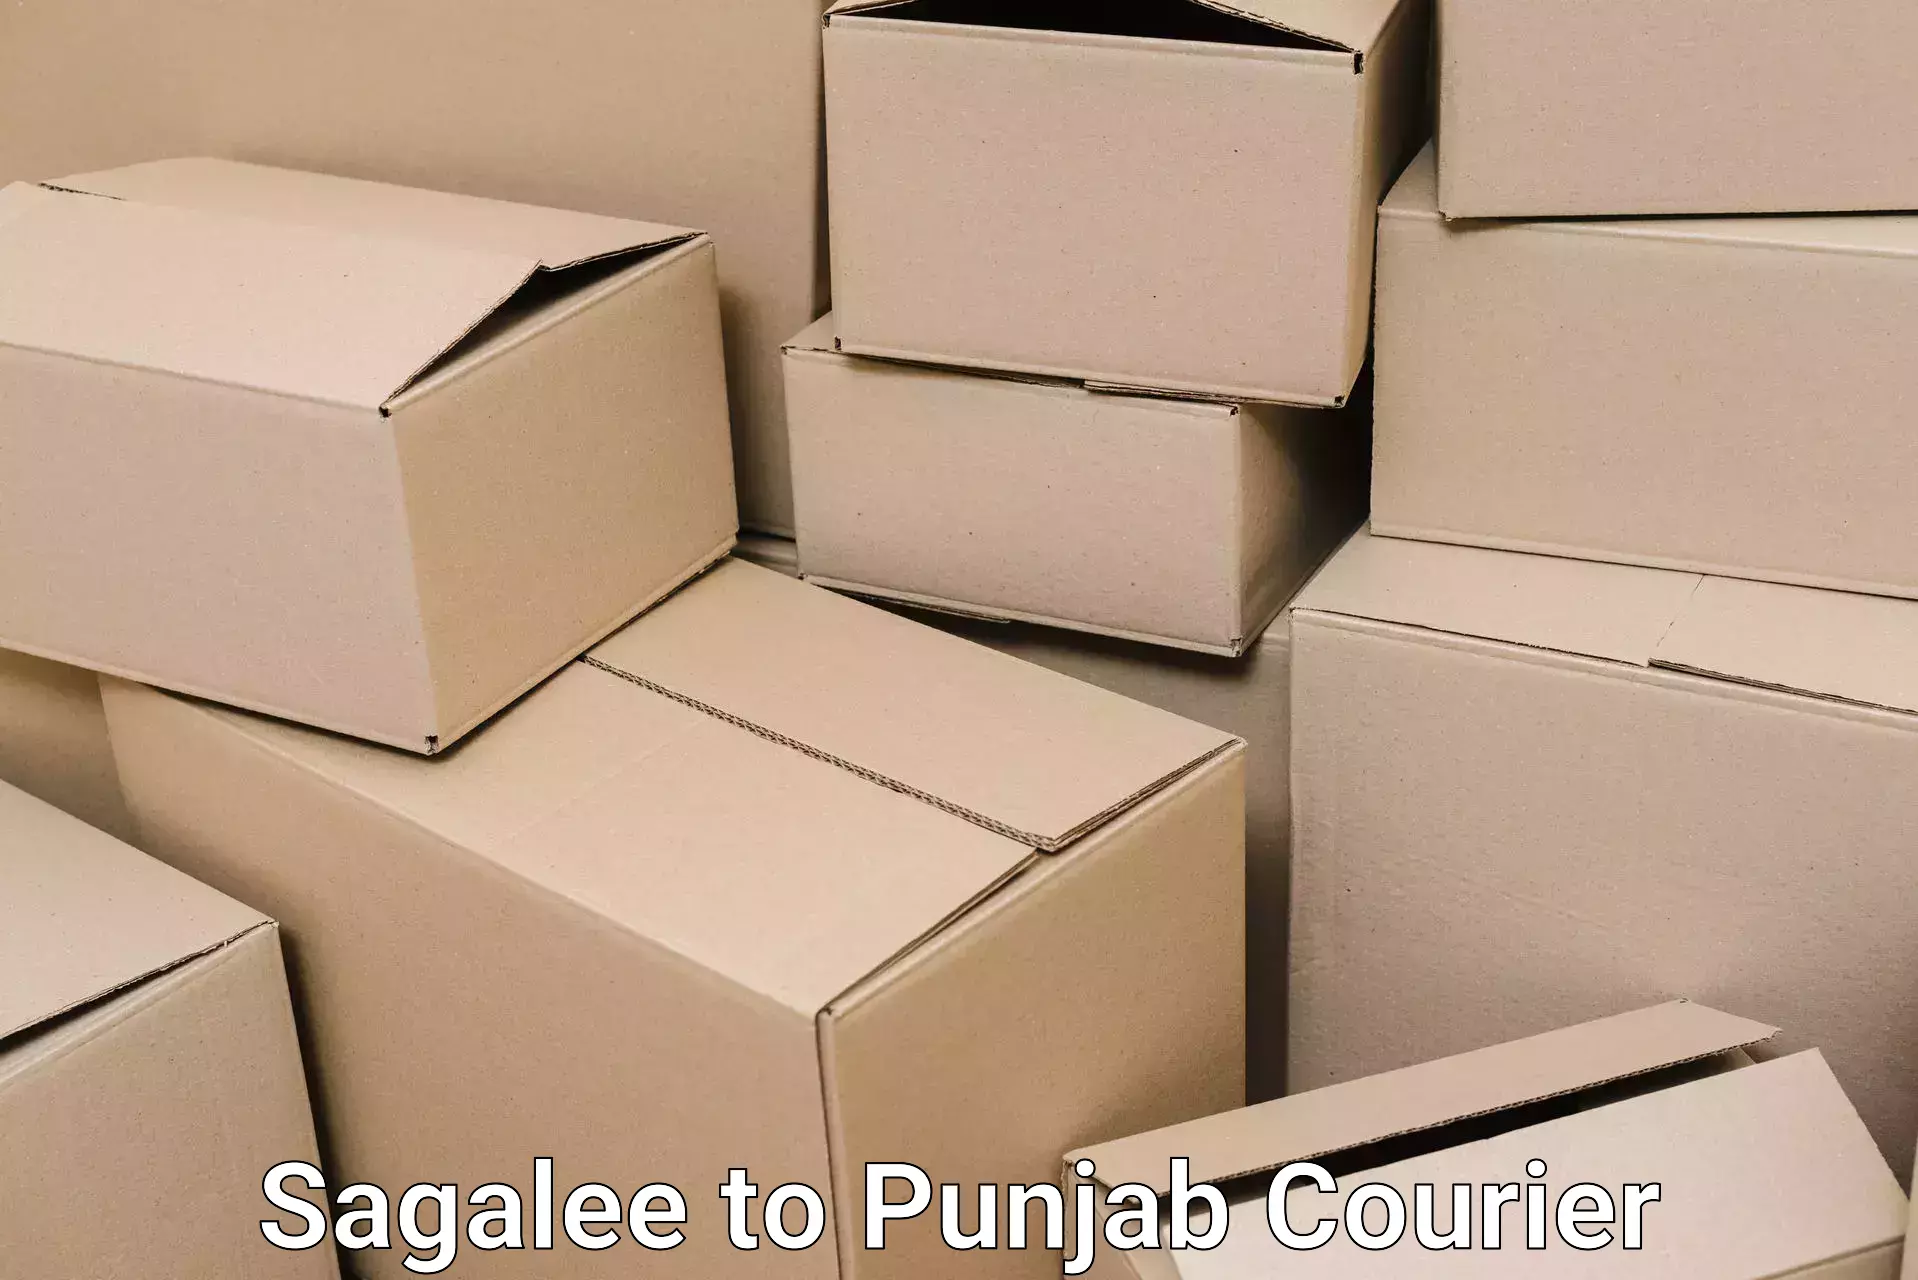 Furniture transport experts Sagalee to Punjab